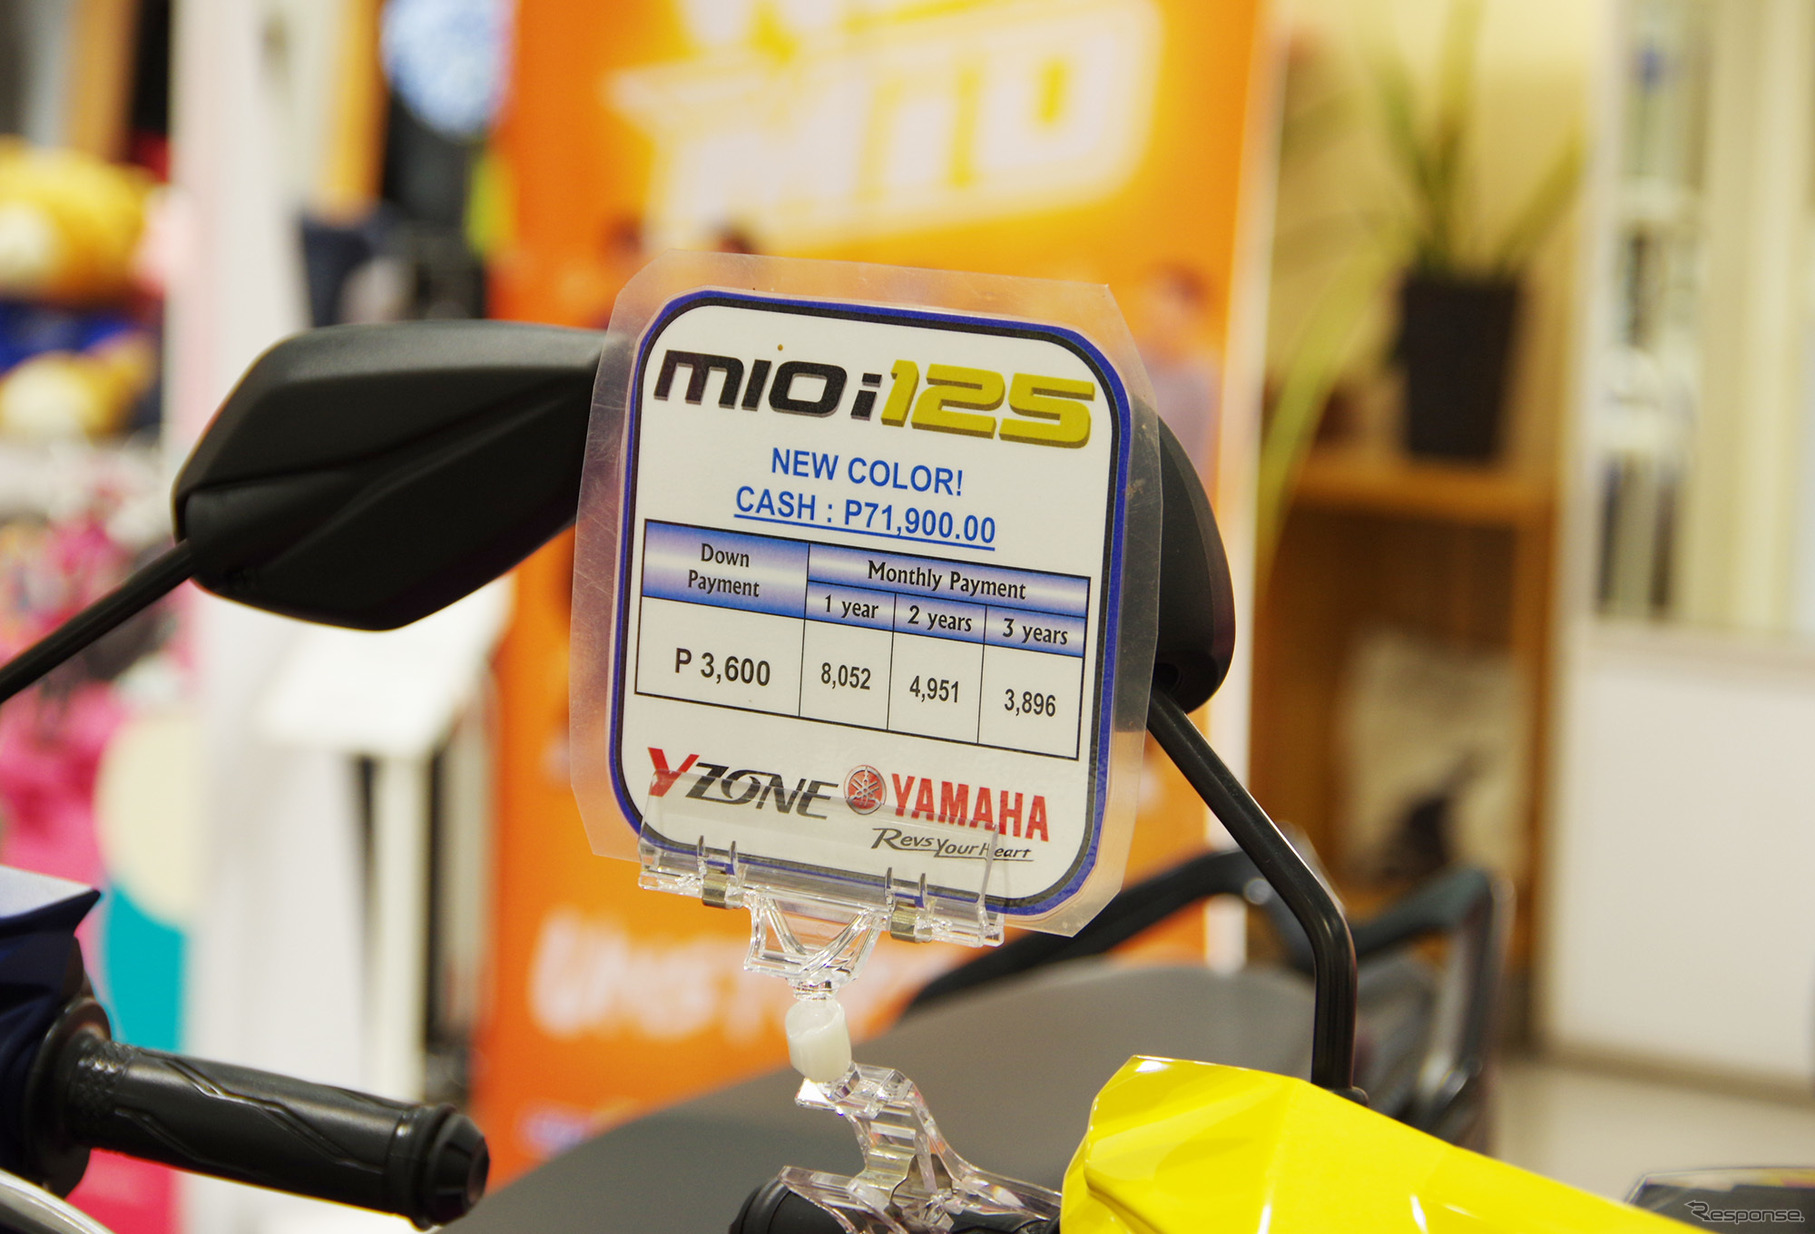 フィリピンでのヤマハの主力モデル「Mio」の価格。日本円でおよそ15万円。